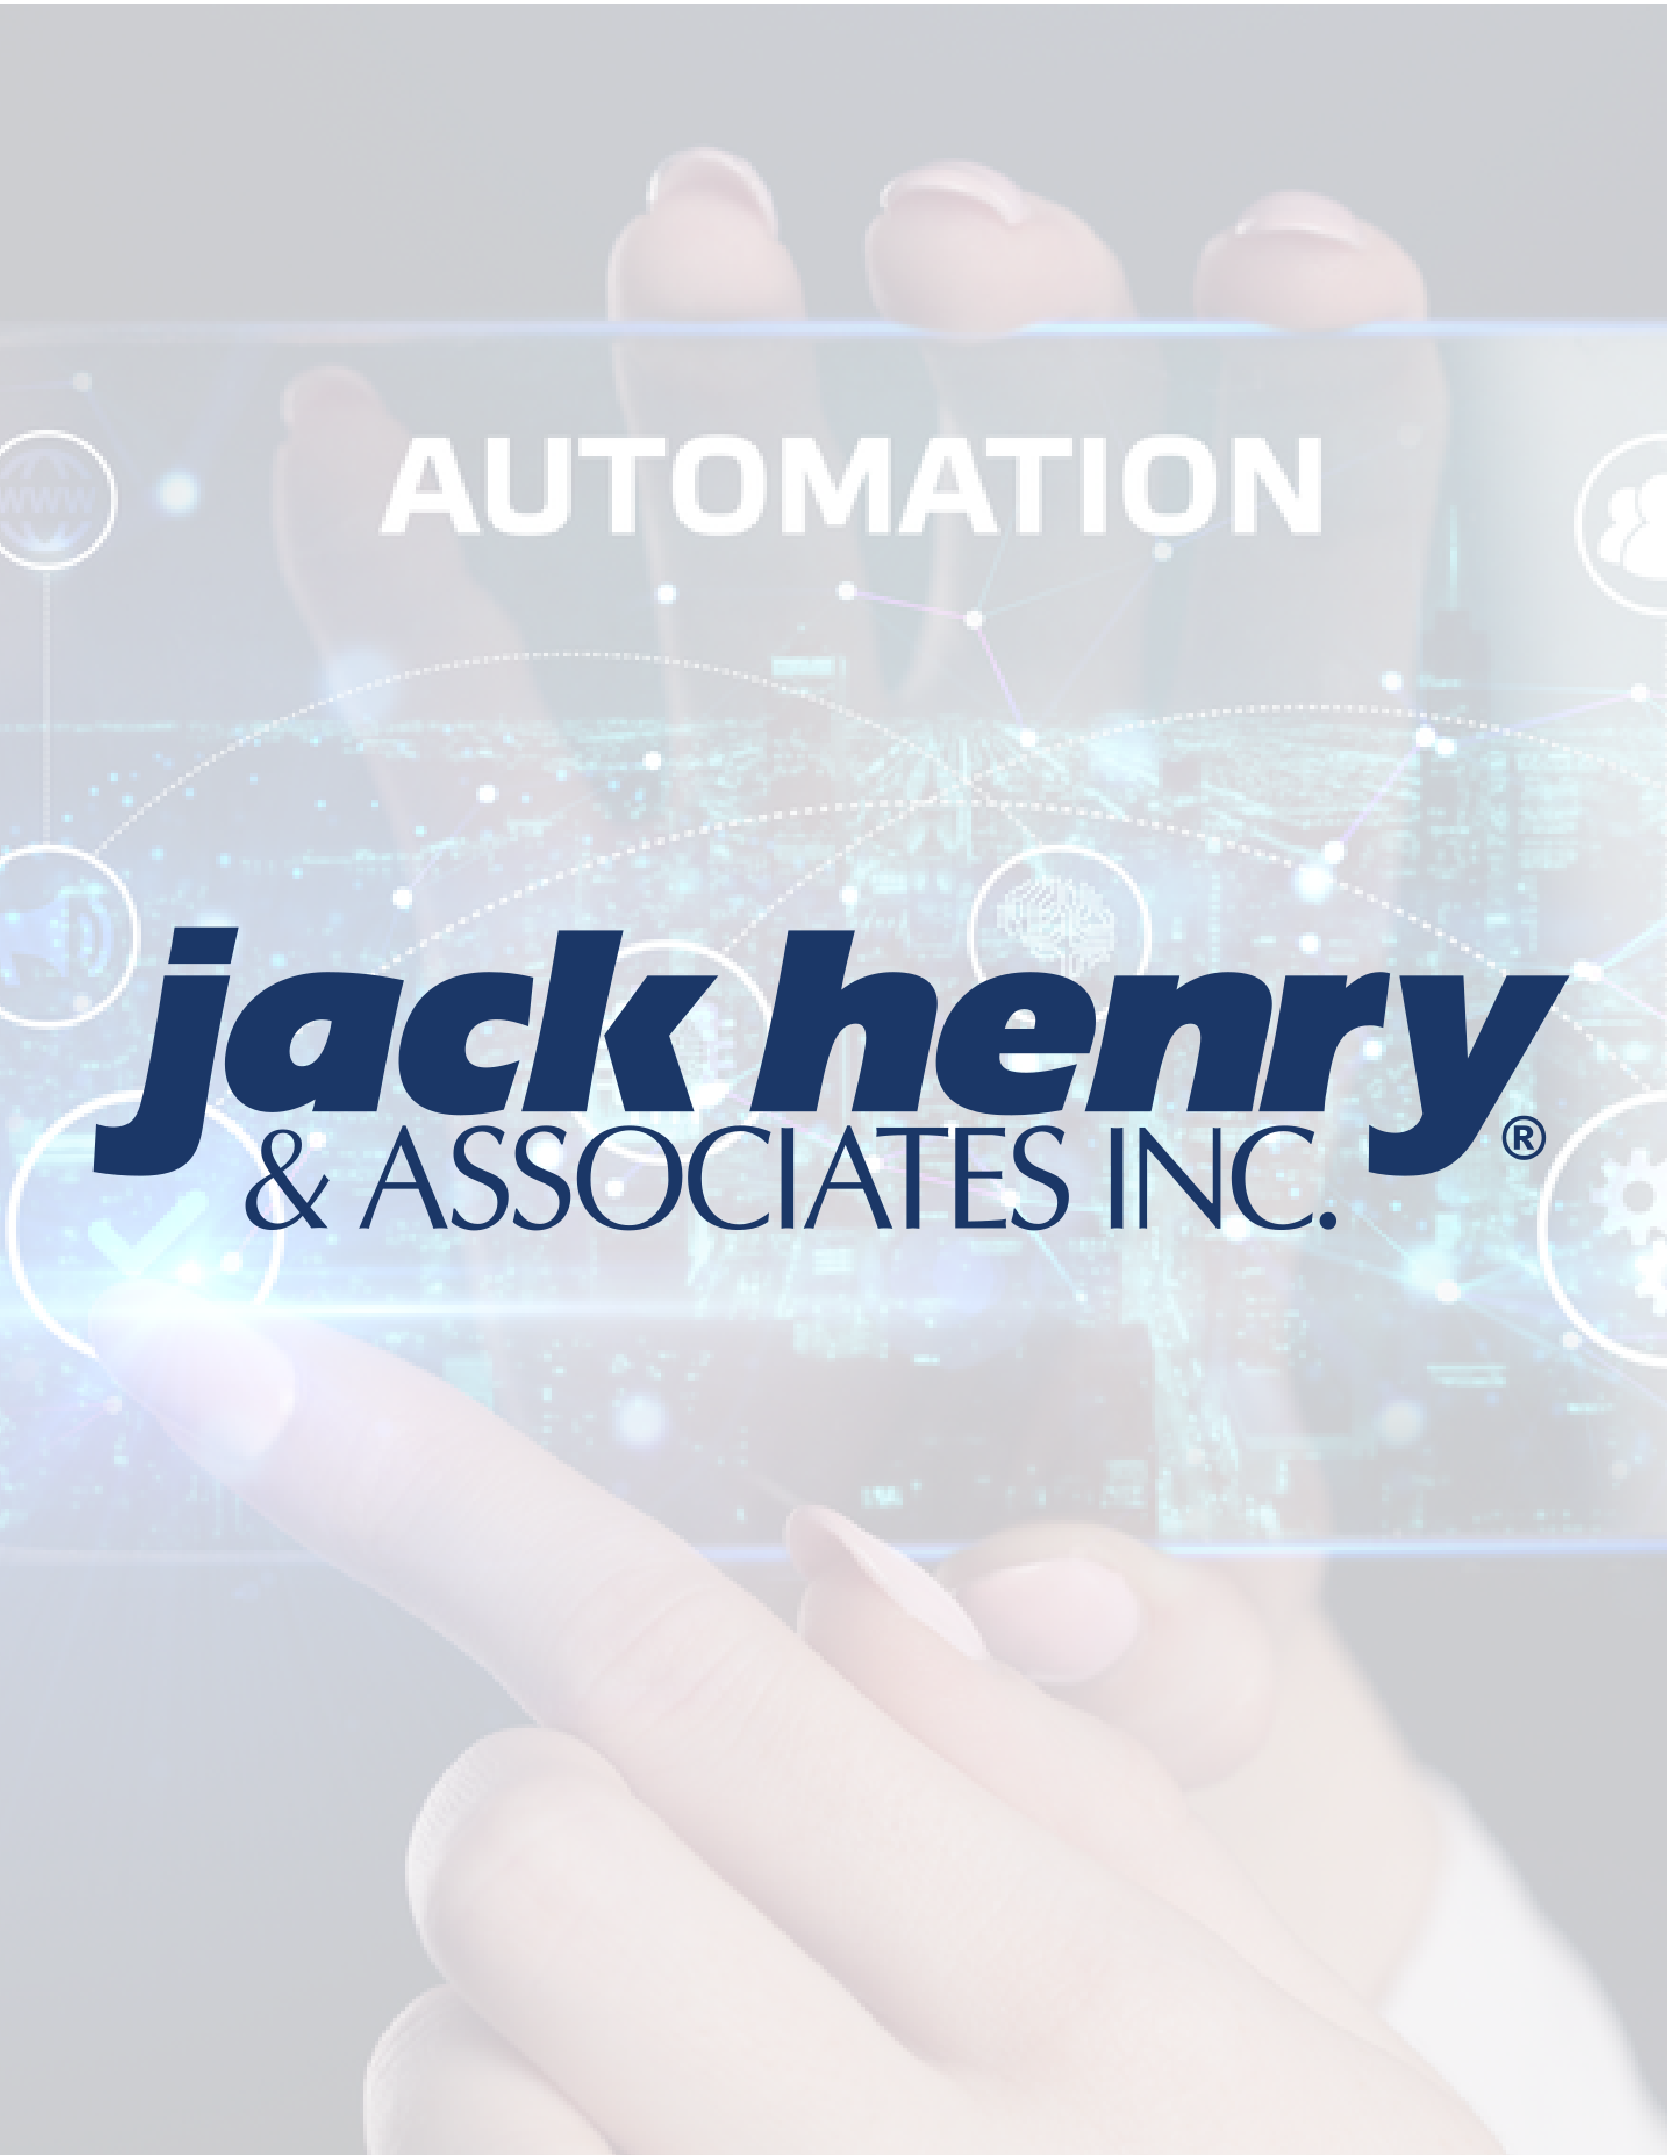 Jack henry blog-01